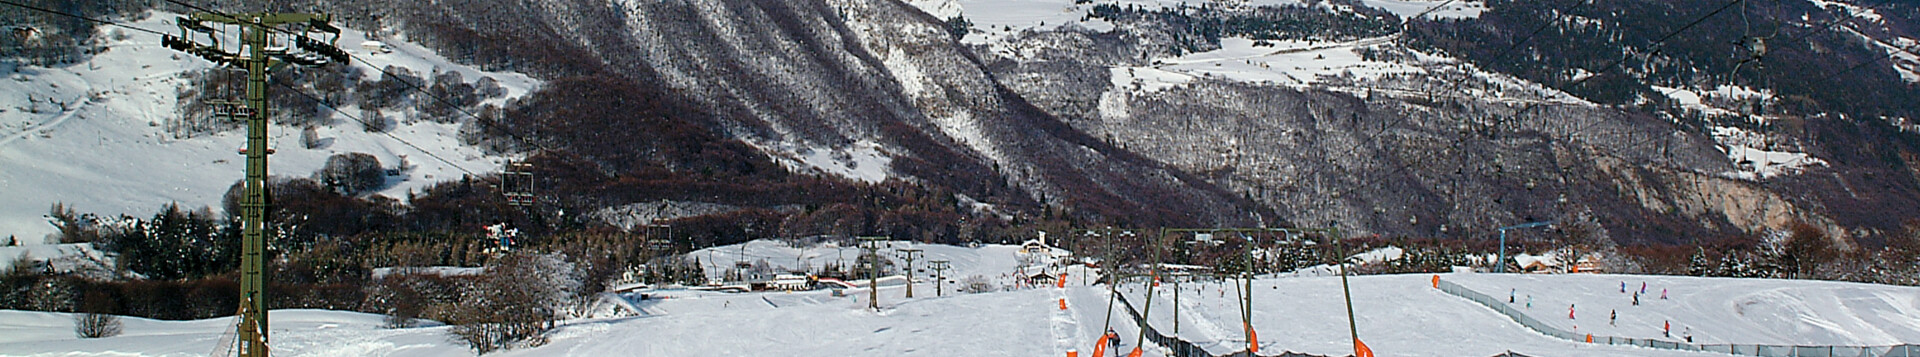 Ski area Ski aPolsa-San Valentino  